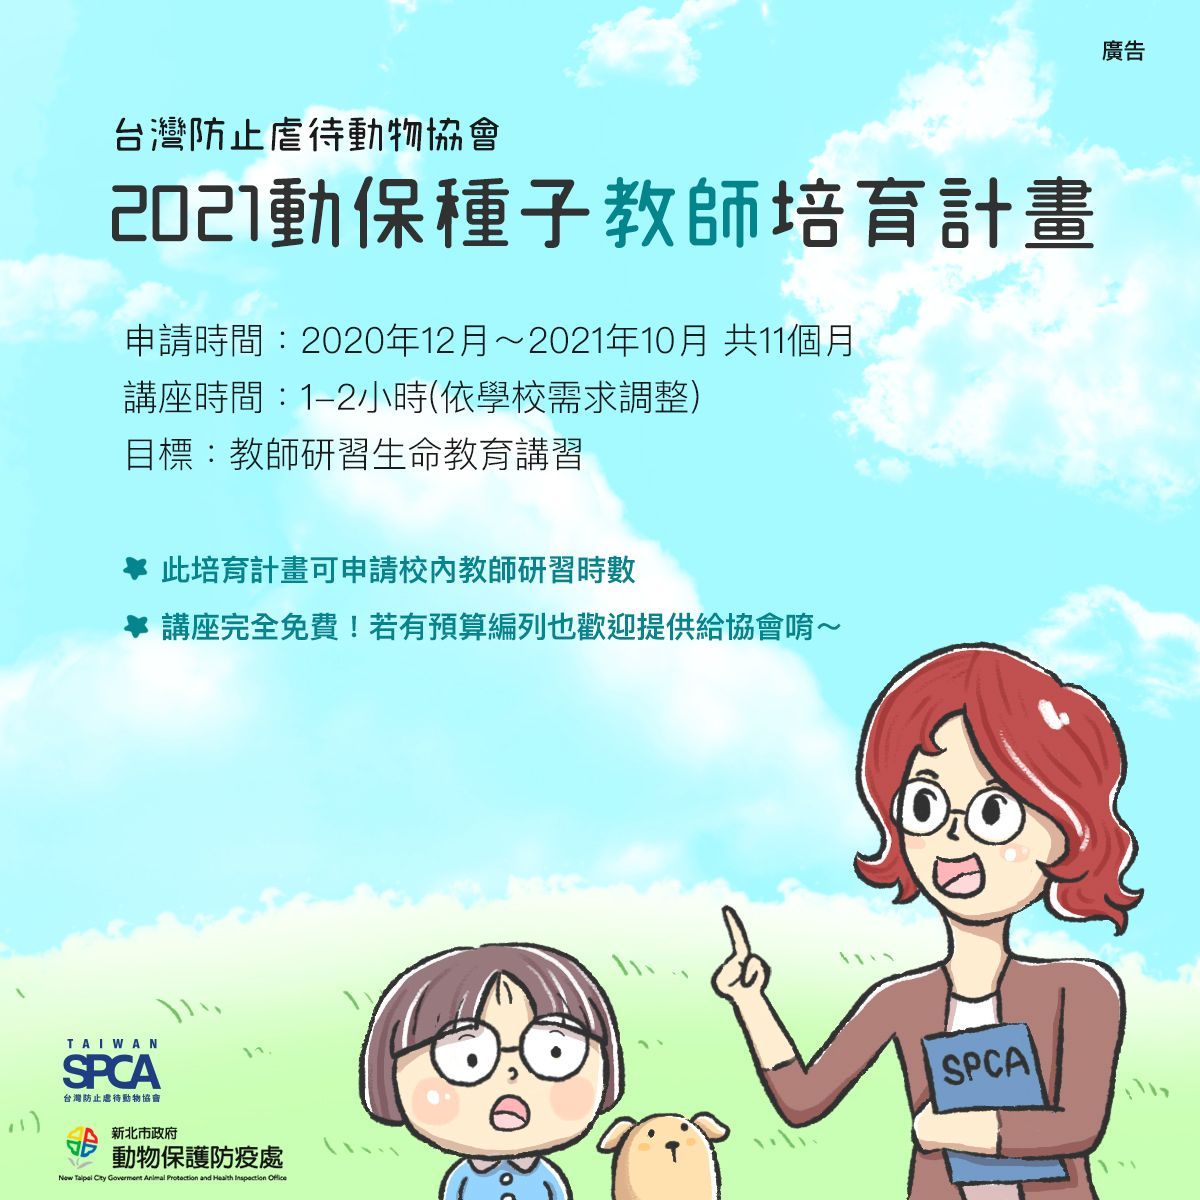 【Taiwan SPCA x 新北市 2021 動物保護「種子教師」培育計畫】開放報名